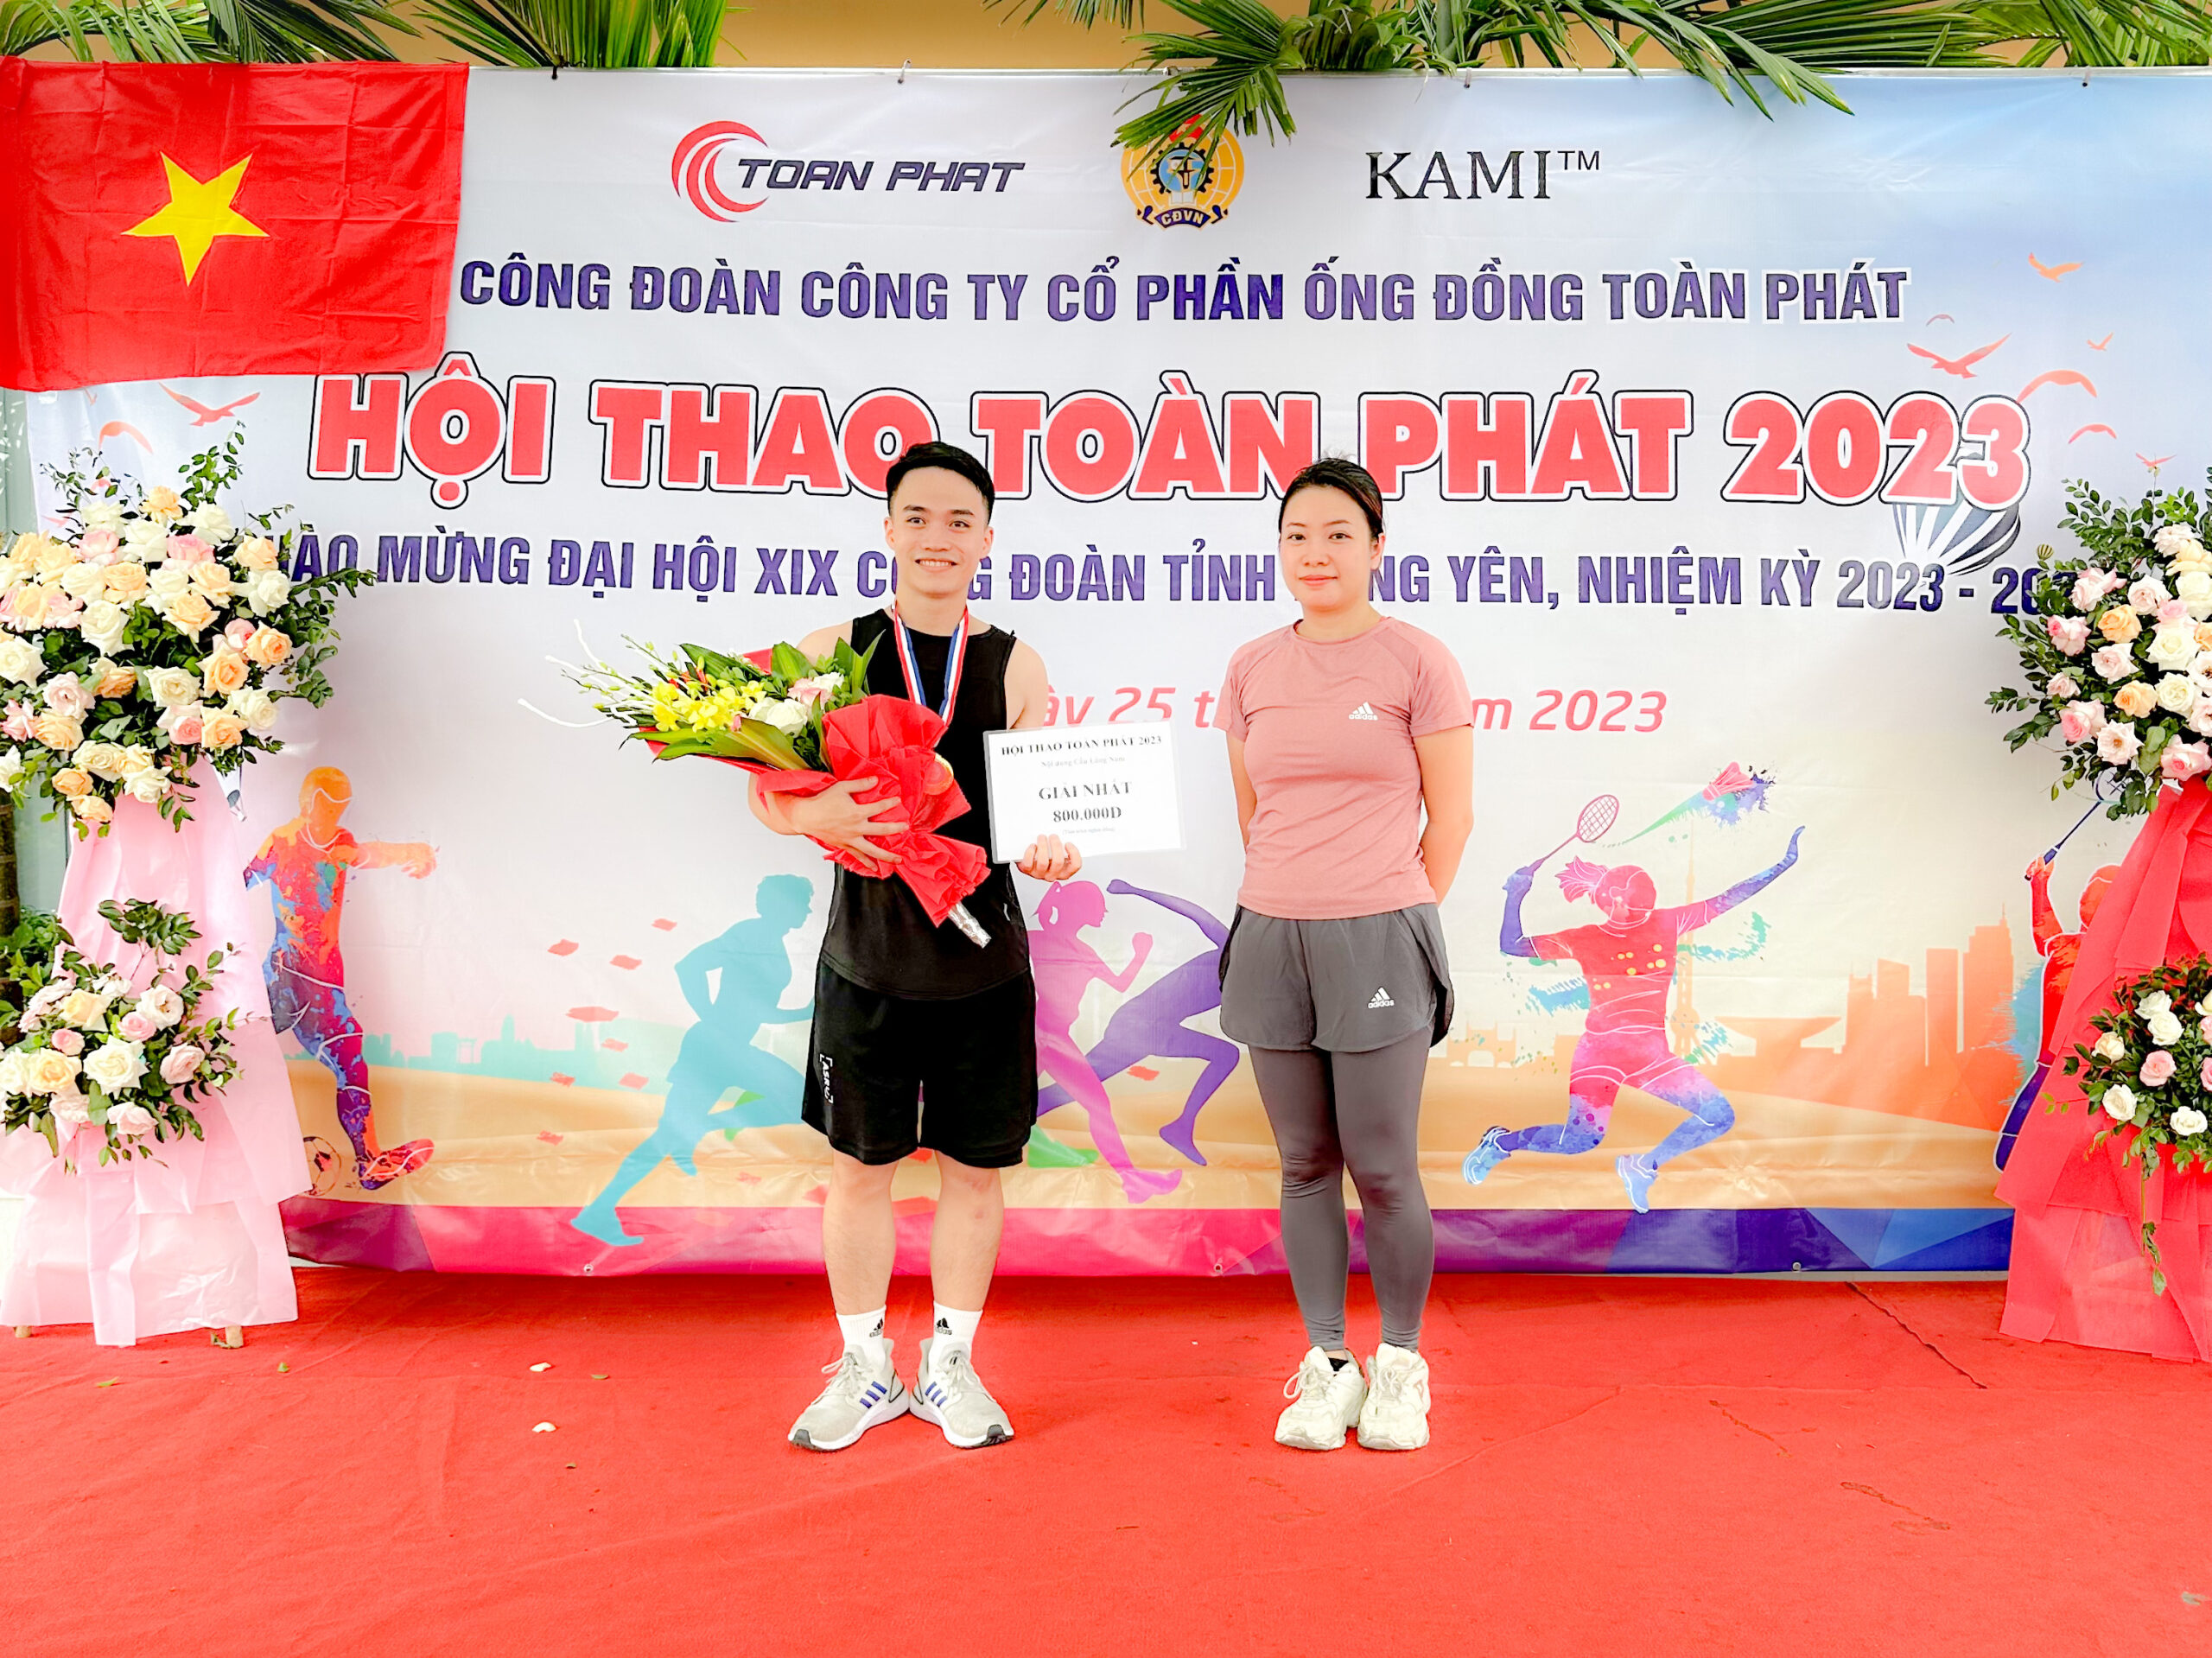 Bà Đào Thu Trang - Phó Tổng giám đốc công ty (bên phải) trao giải Nhất môn Cầu lông Nam cho anh Lê Minh Chính